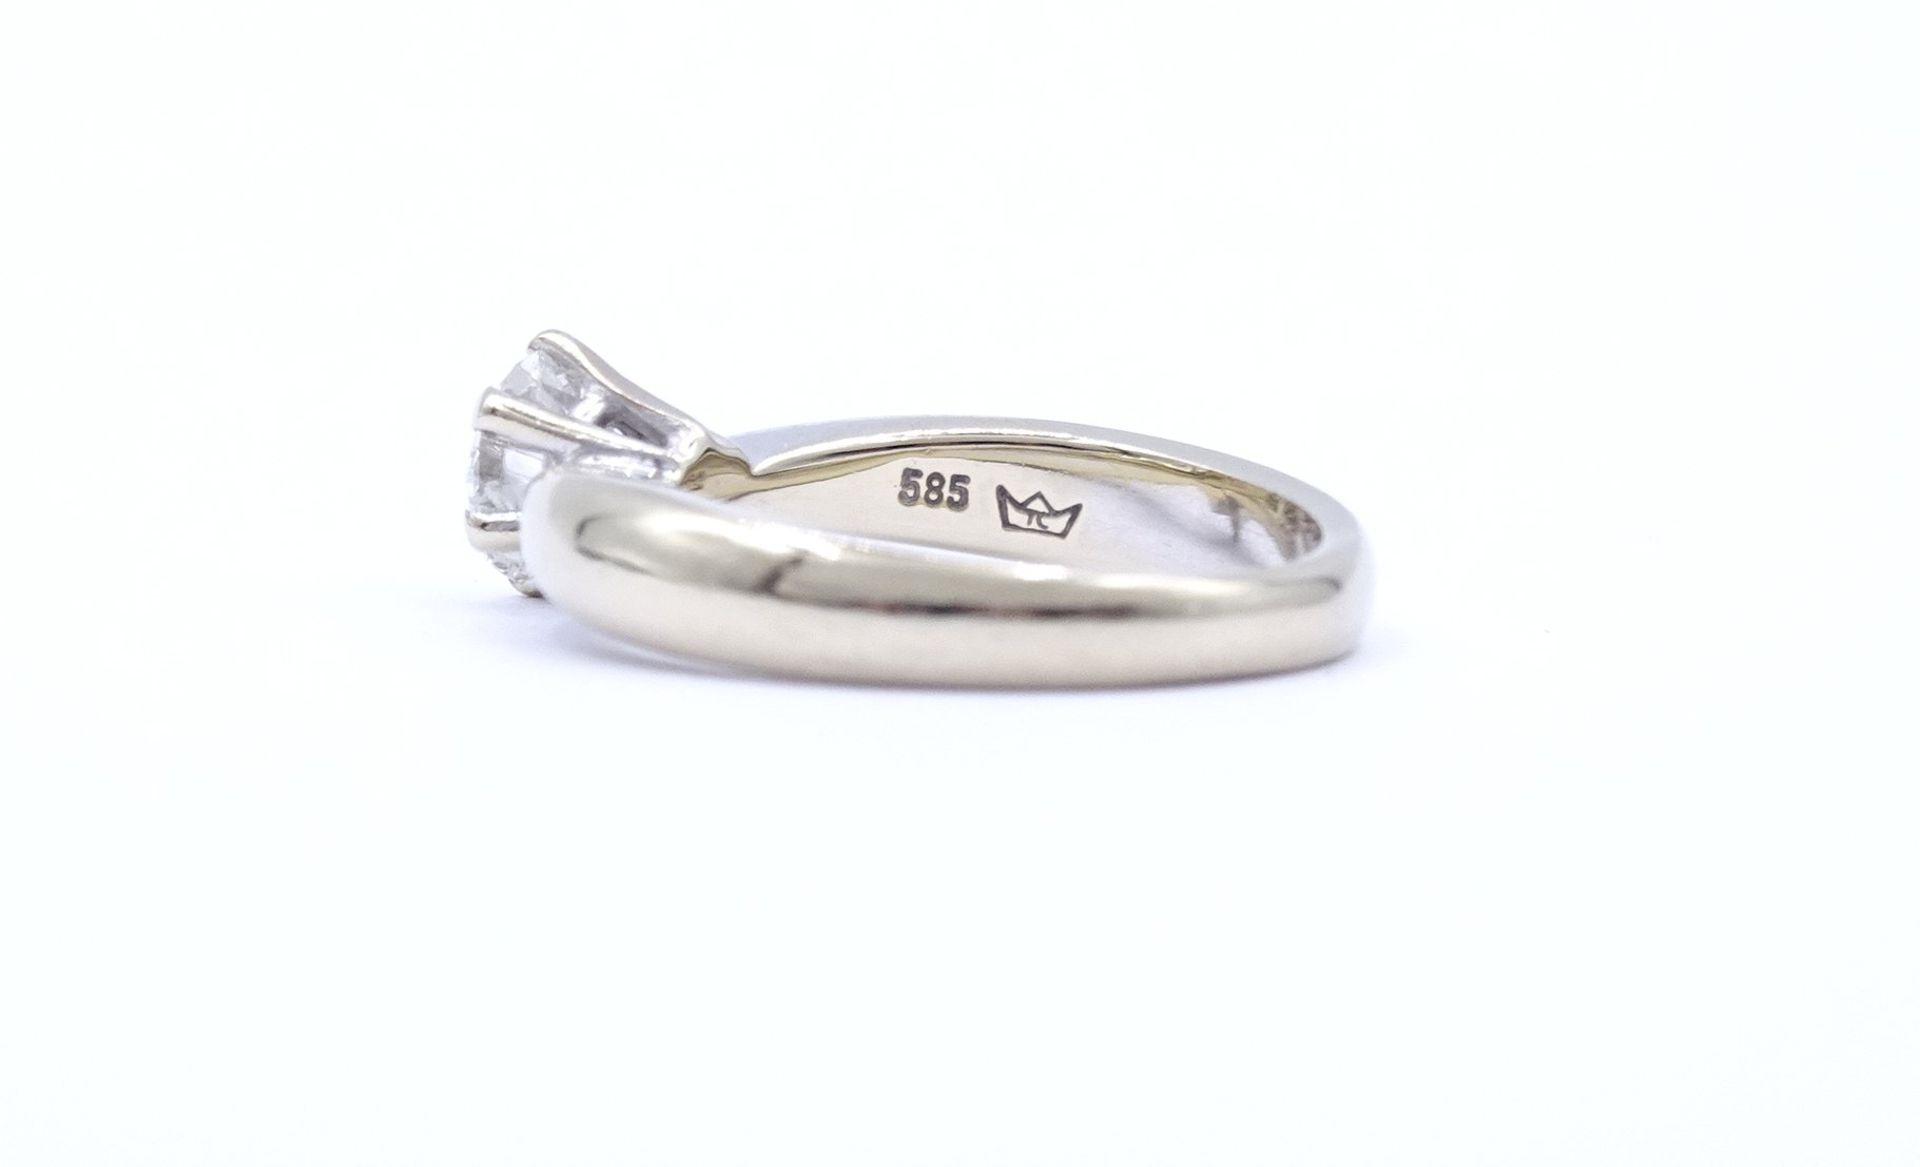 Solitär Brillant Ring, WG 585/000, Brillant 1,0ct., si, i-j, Brillant mit 3 kleinen Abplatzer, 6,1g - Bild 4 aus 7